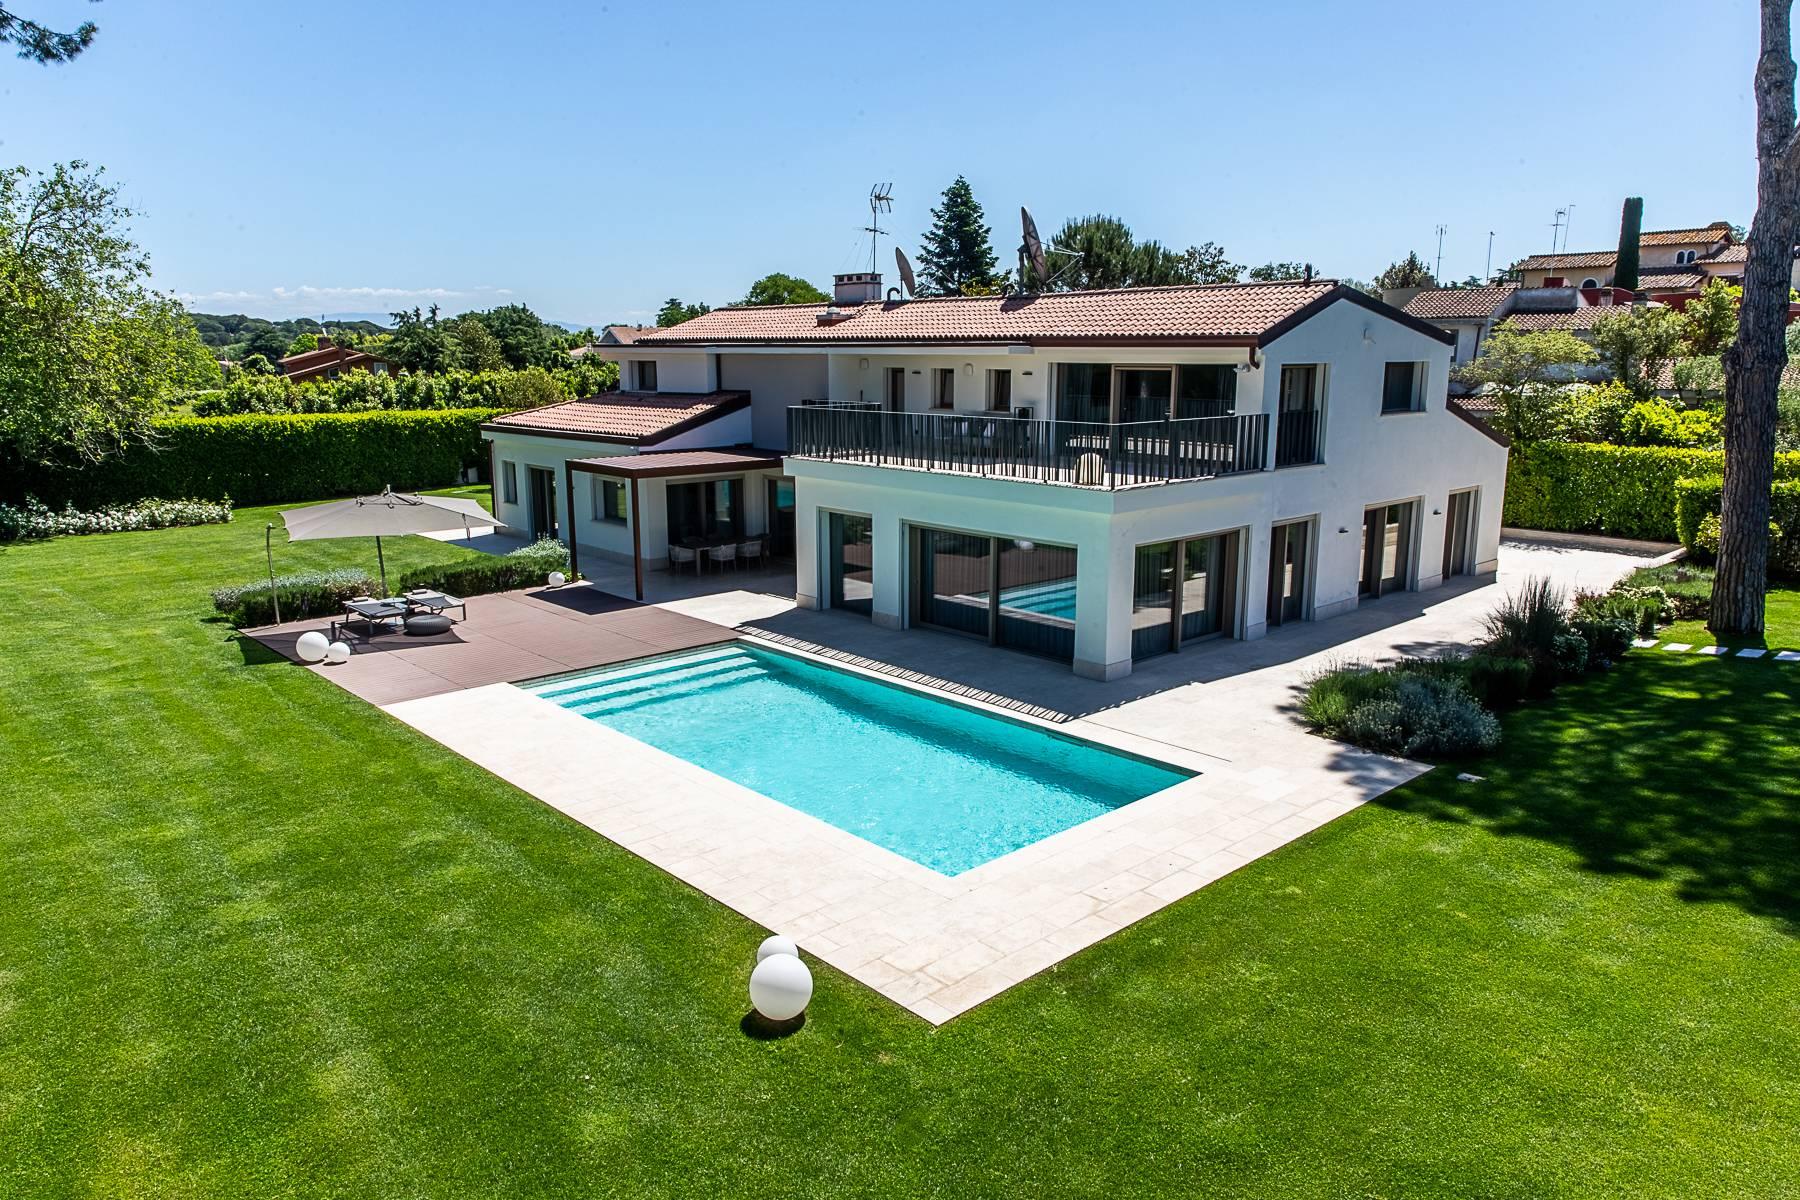 Wunderschöne moderne Villa mit Pool im Olgiata Stadtviertel - 1